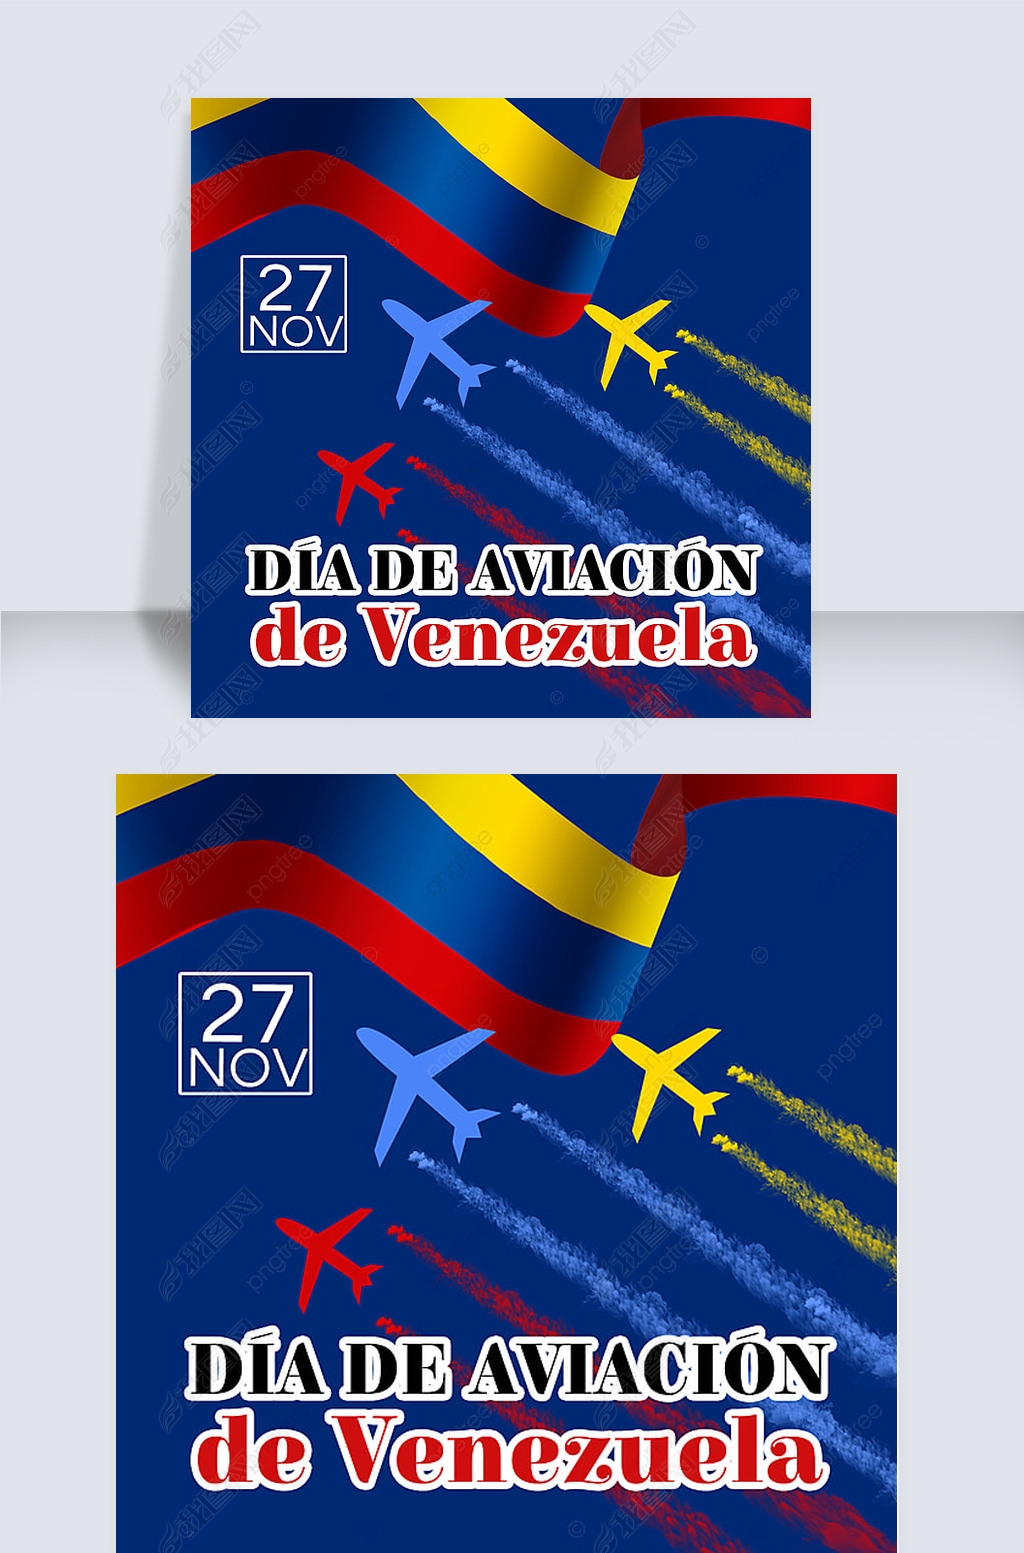 飞机día de iación de venezuela社交媒体sns